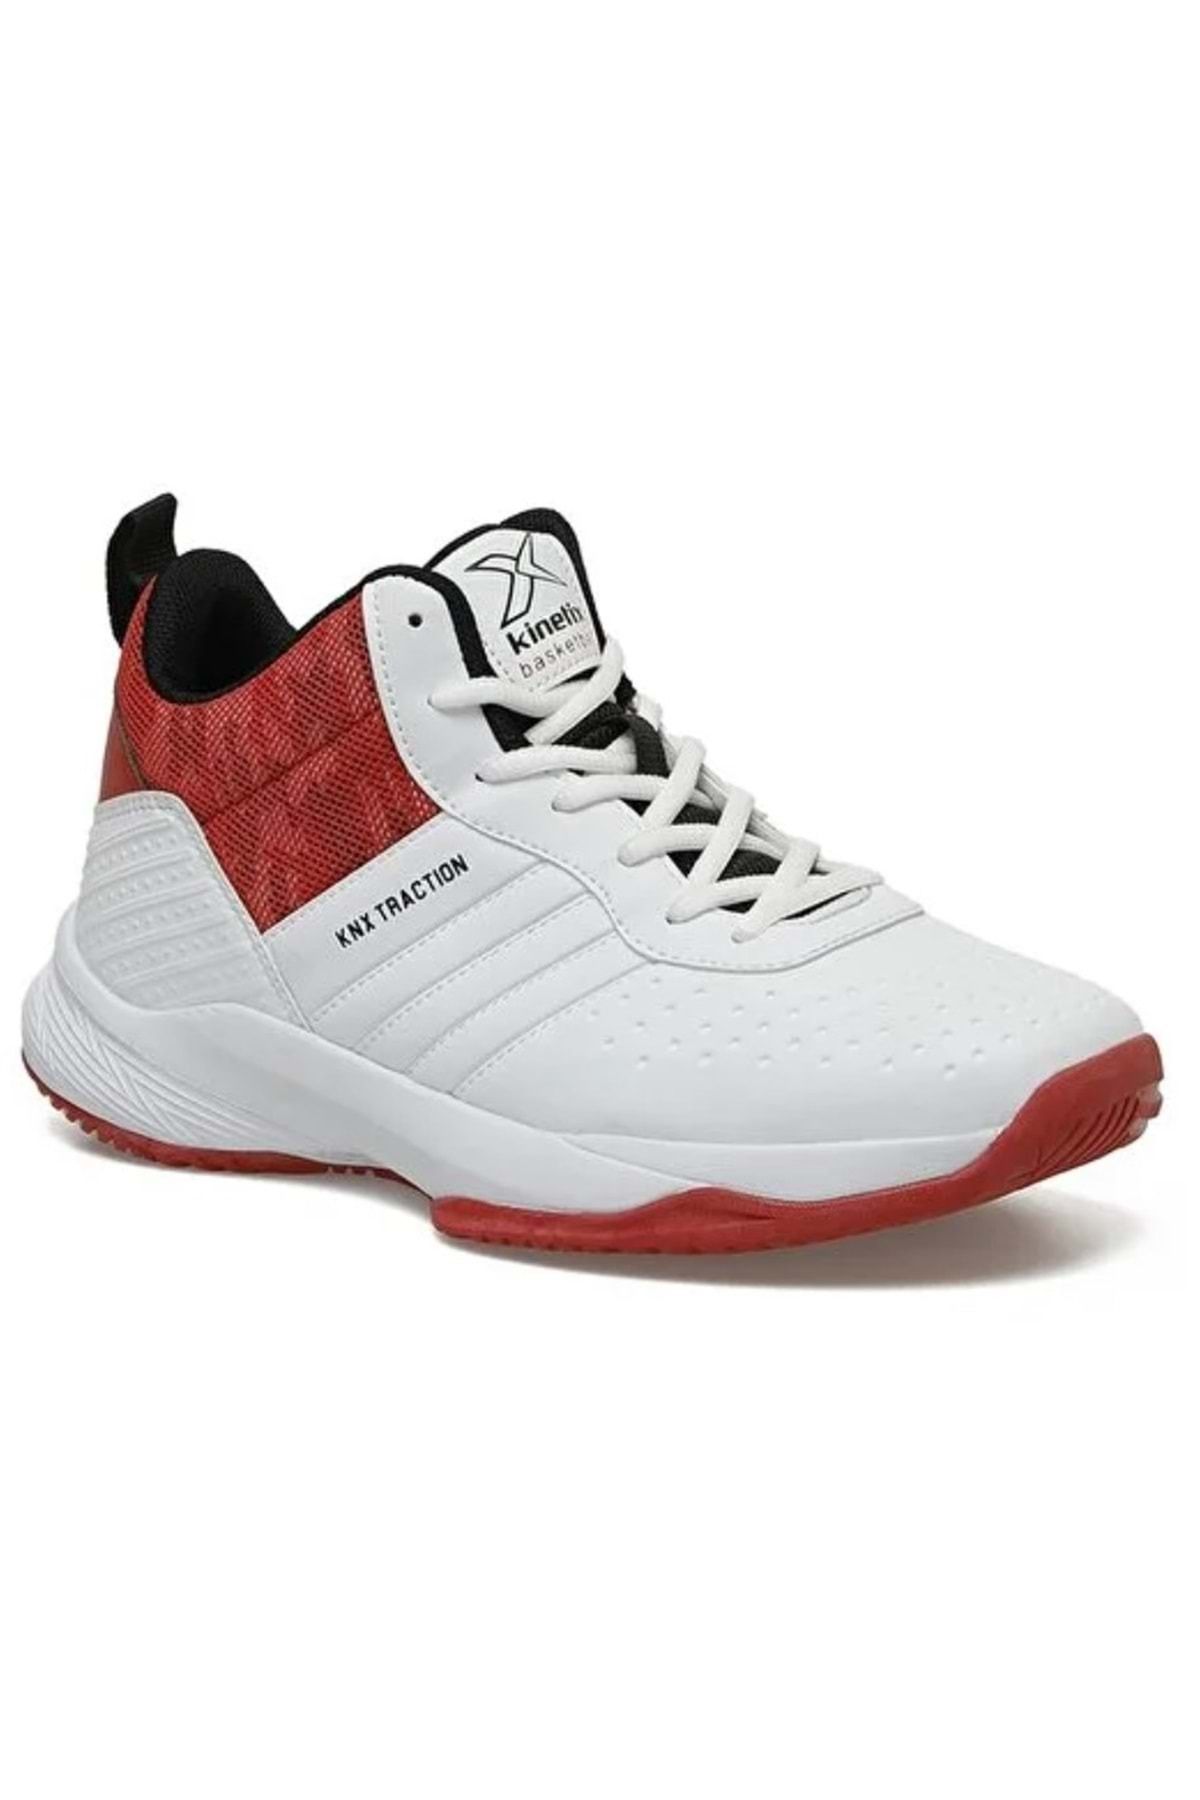 Kinetix Tractıon Pu Basketbol Ayakkabısı Erkek Spor Ayakkabı Kırmızı